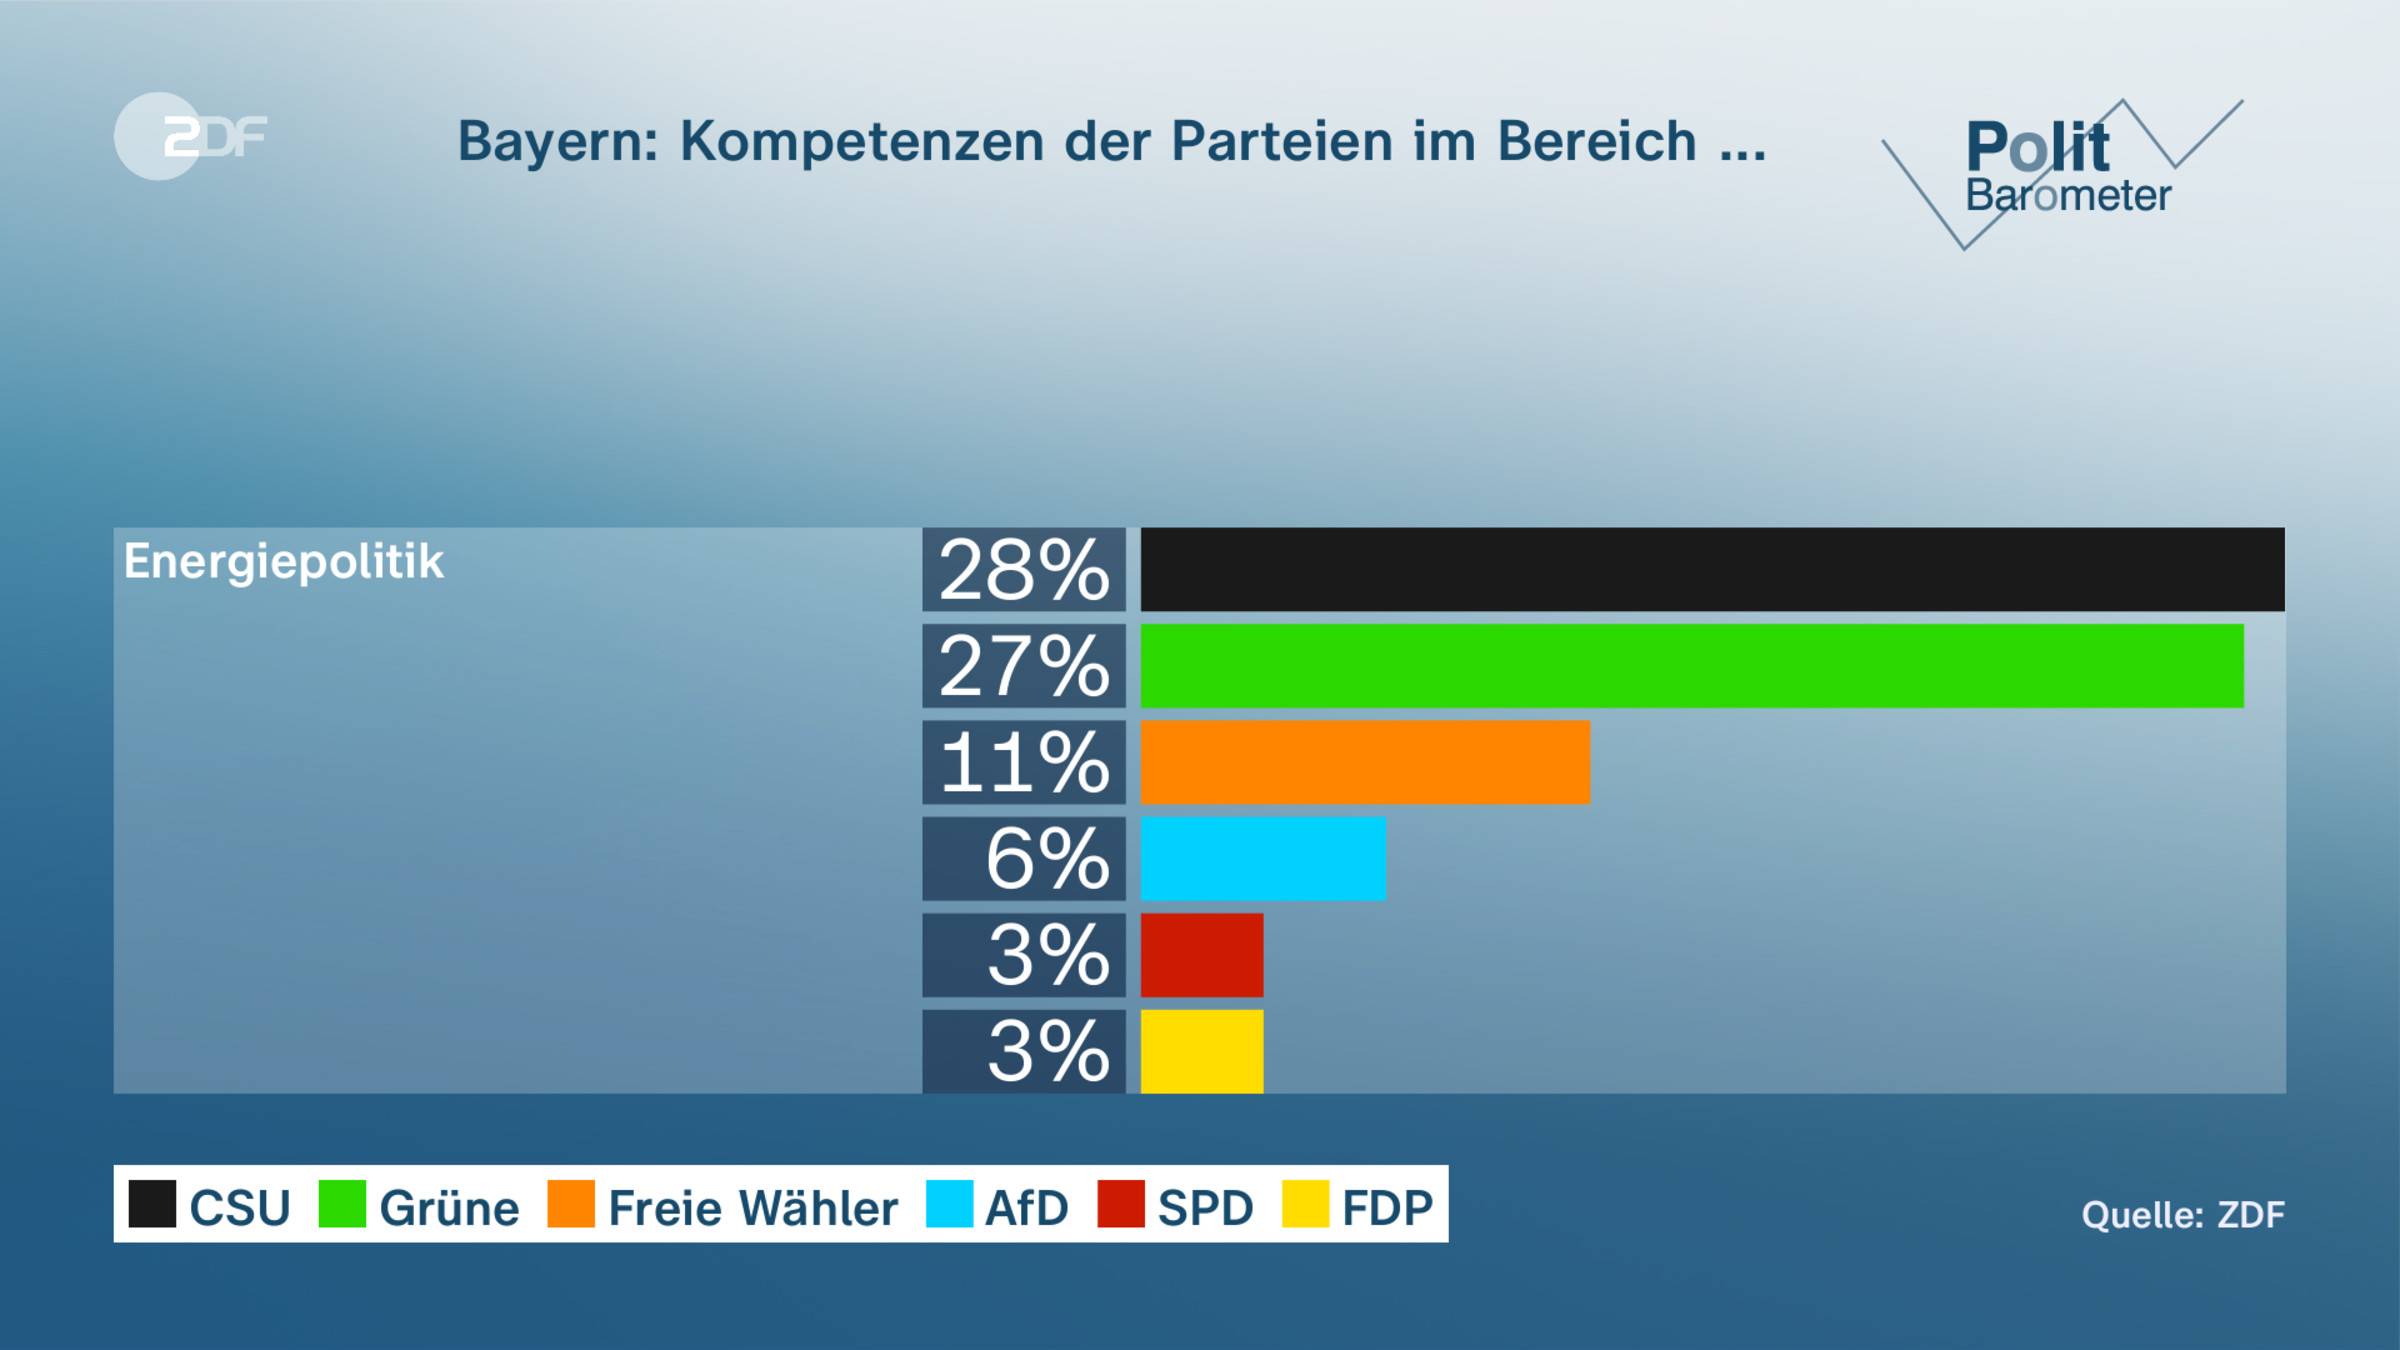 Bayern: Kompetenzen der Parteien im Bereich ...